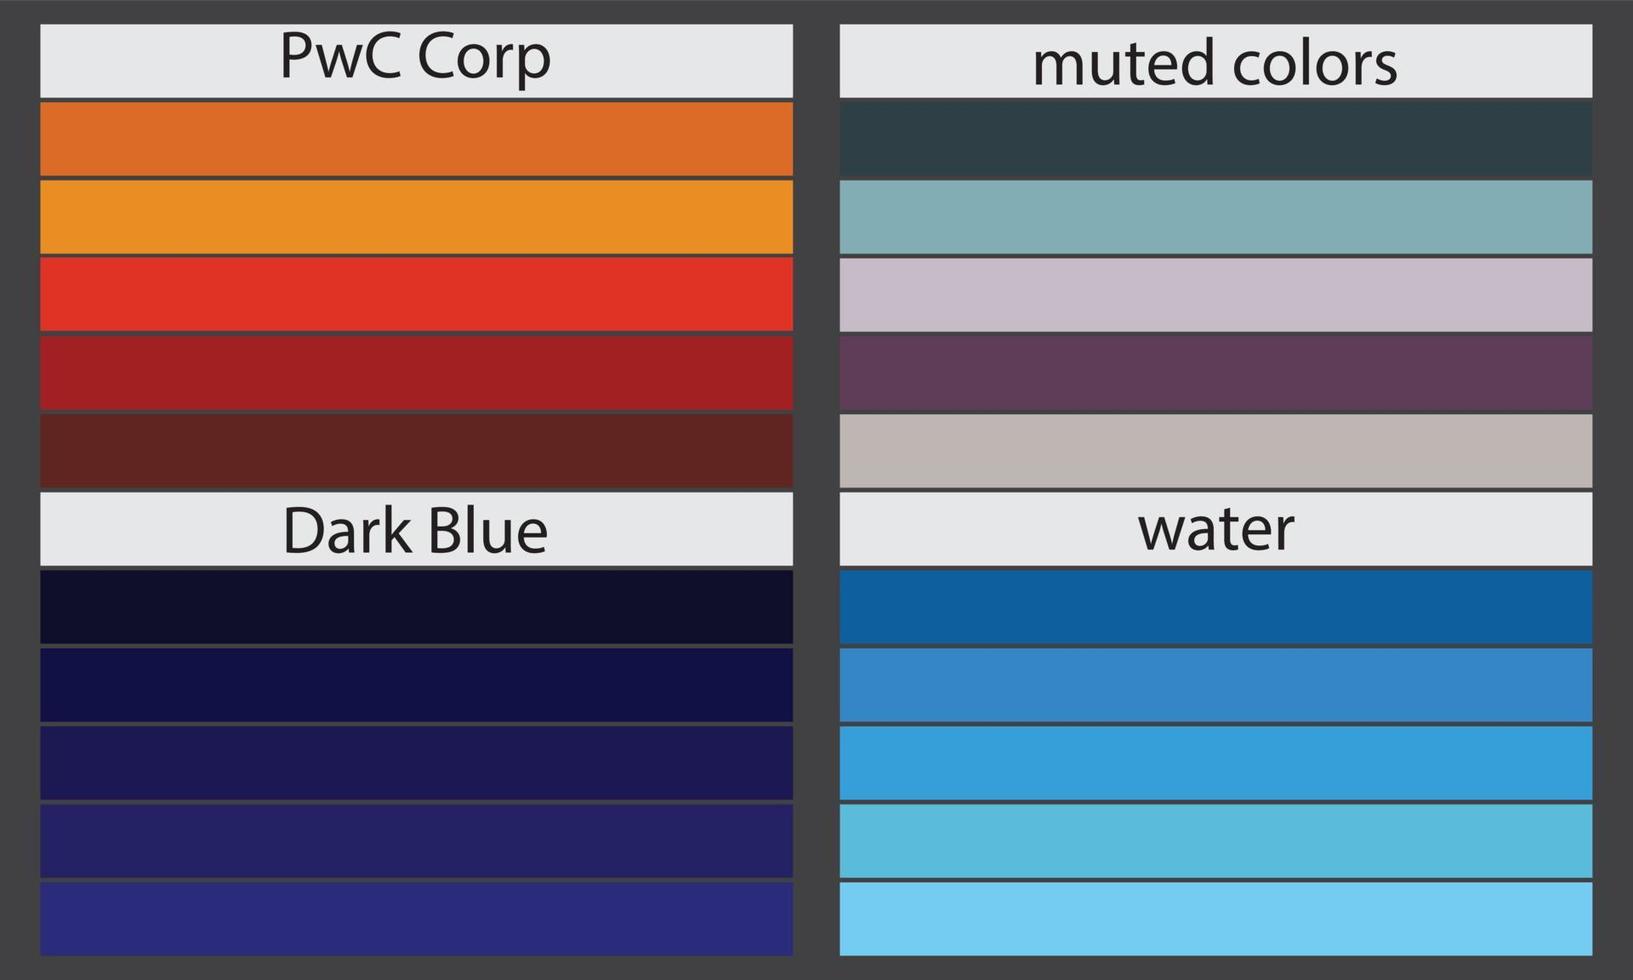 Farbpaletten Eine Farbpalette ist eine Reihe von Farben, die in einem Design- oder visuellen Projekt verwendet werden. Diese Farben wurden sorgfältig ausgewählt, um ein zusammenhängendes und optisch ansprechendes Design zu schaffen. vektor